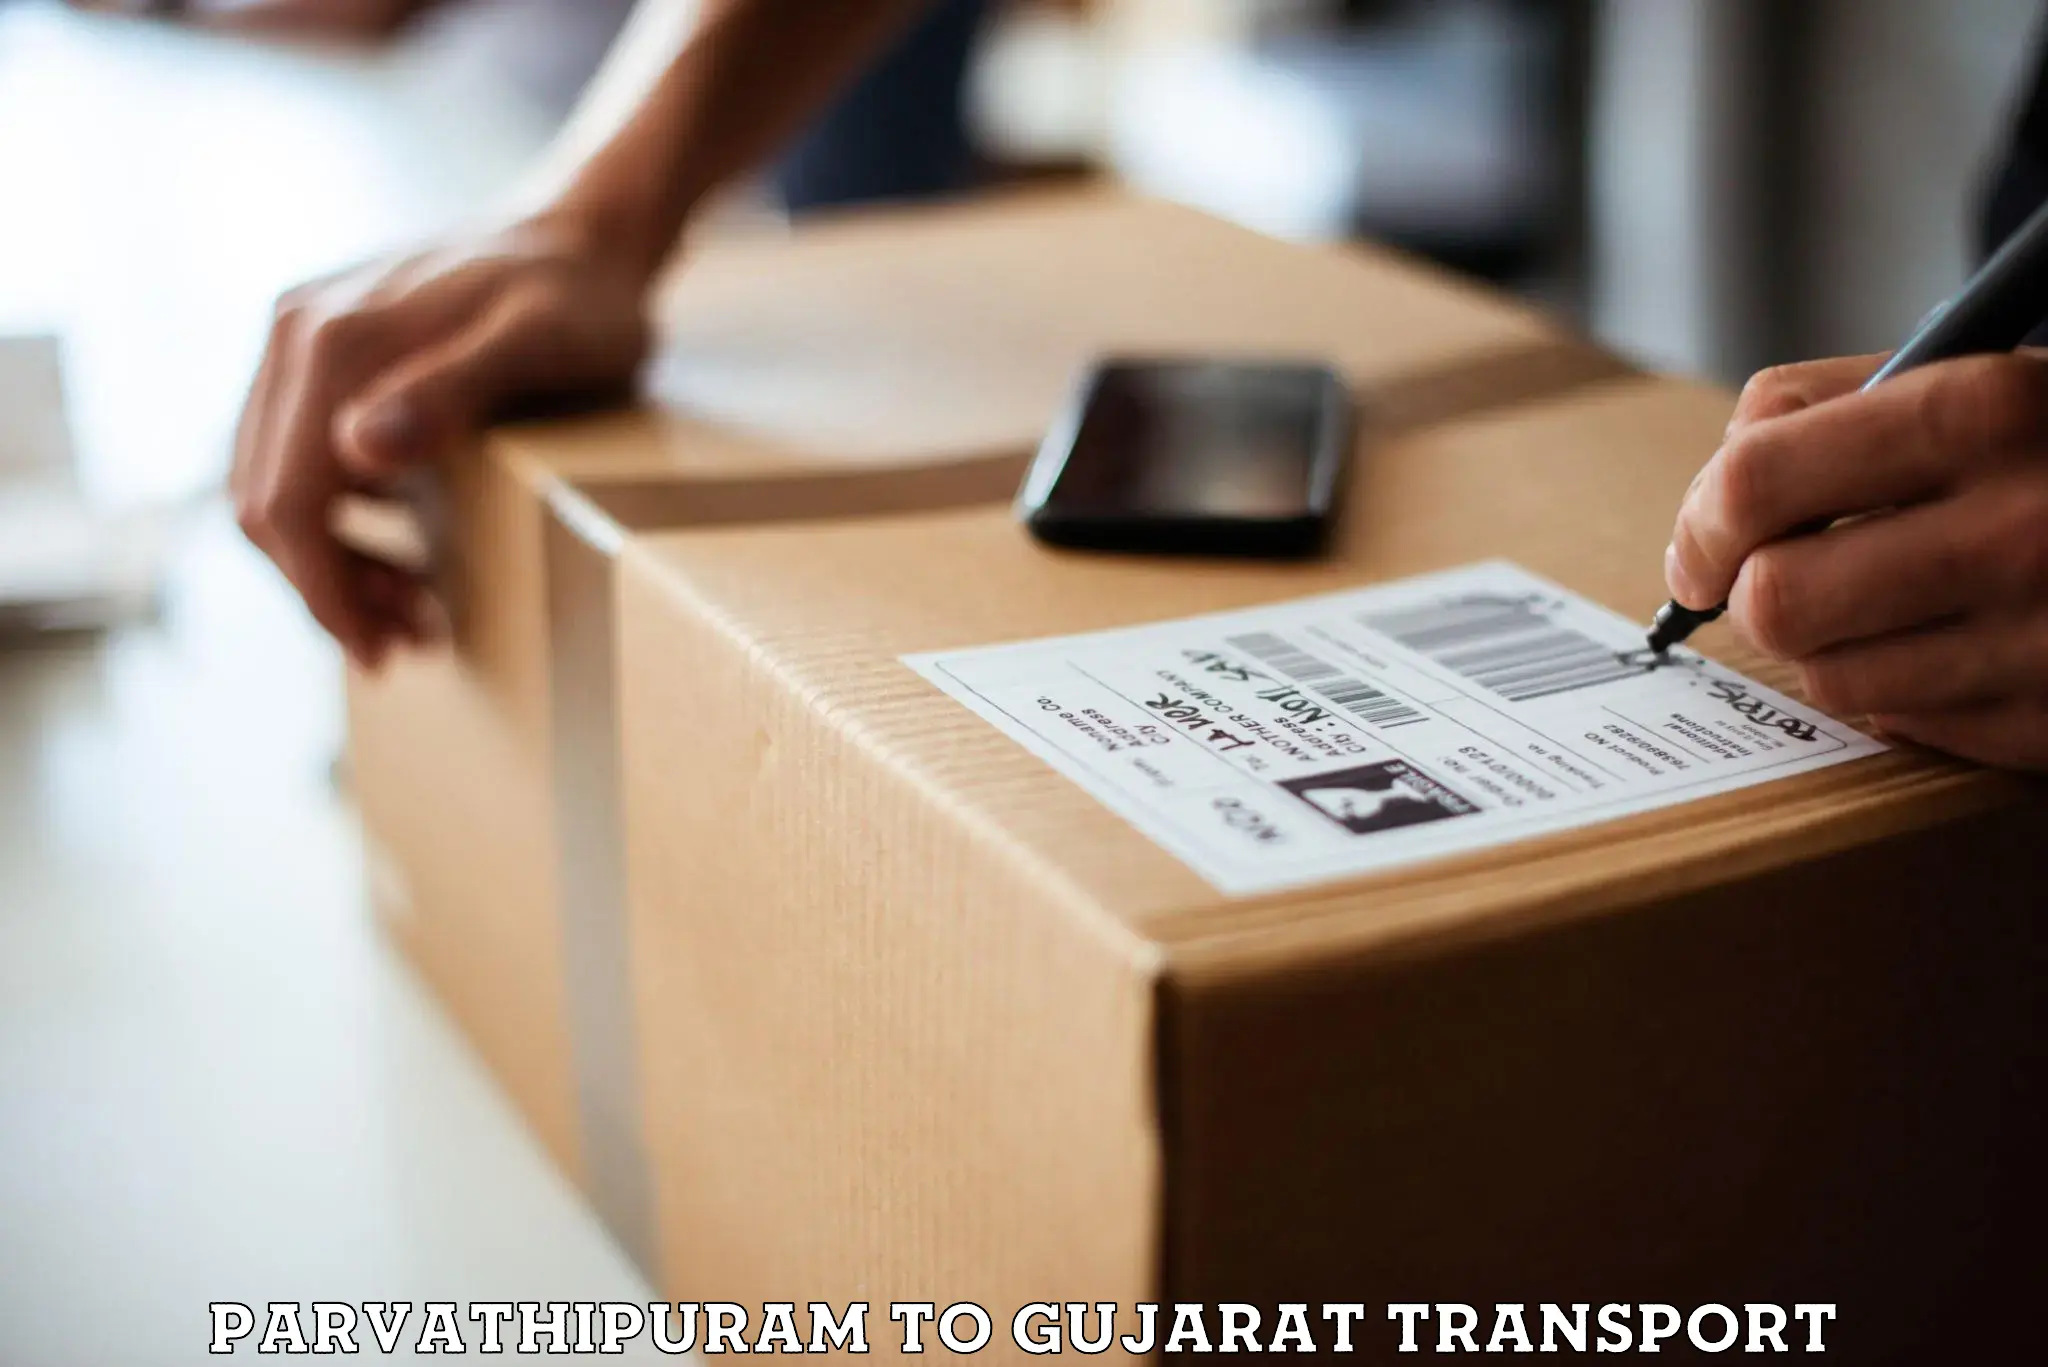 Furniture transport service Parvathipuram to Vadodara